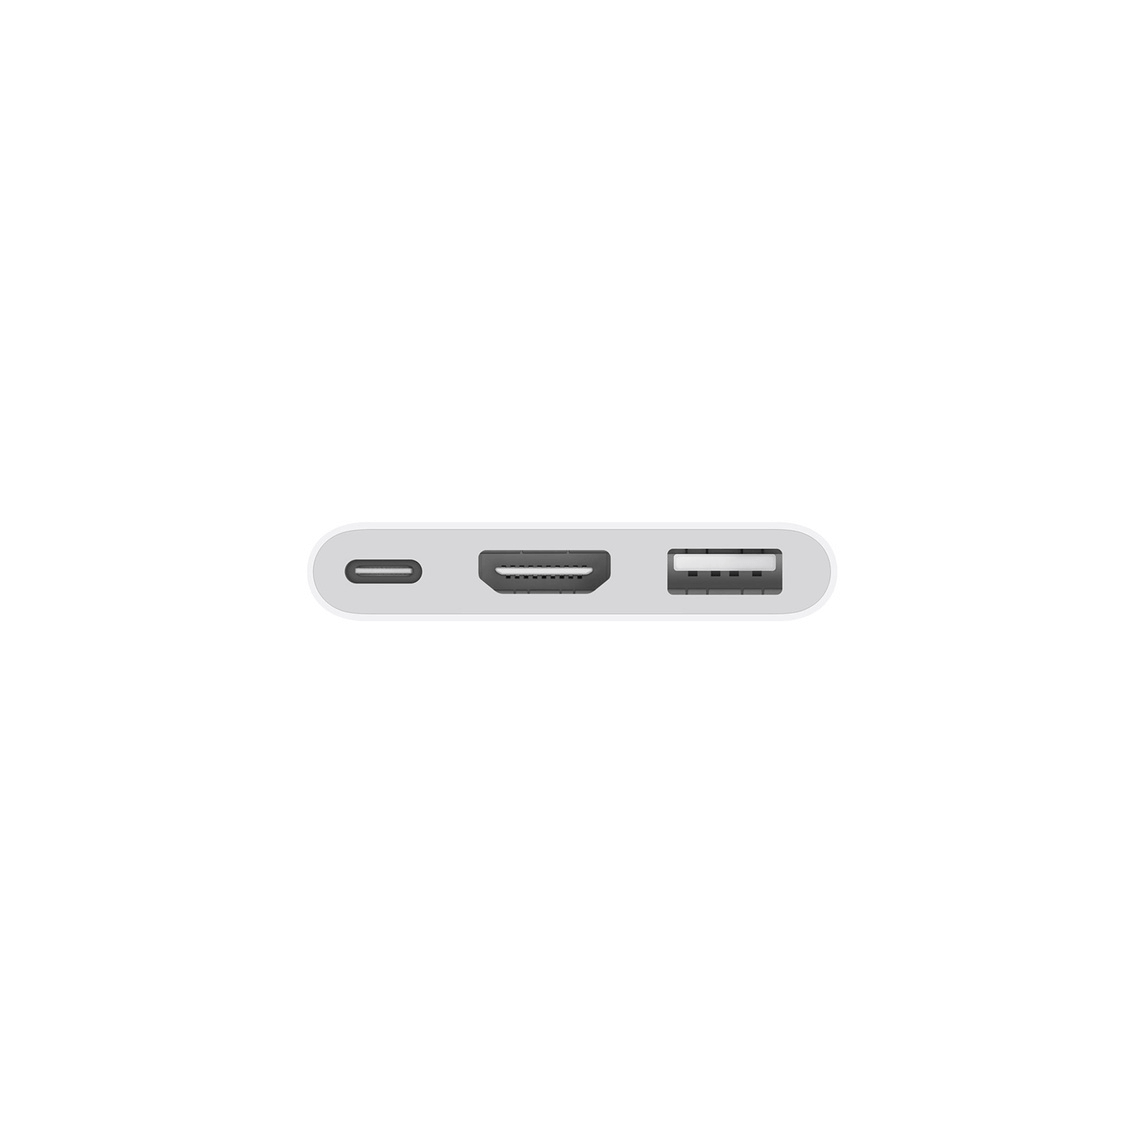 מתאם מקורי אפל מולטיפורט Apple  MUF82ZM  Apple USB-C Digital AV Multiport Adapter